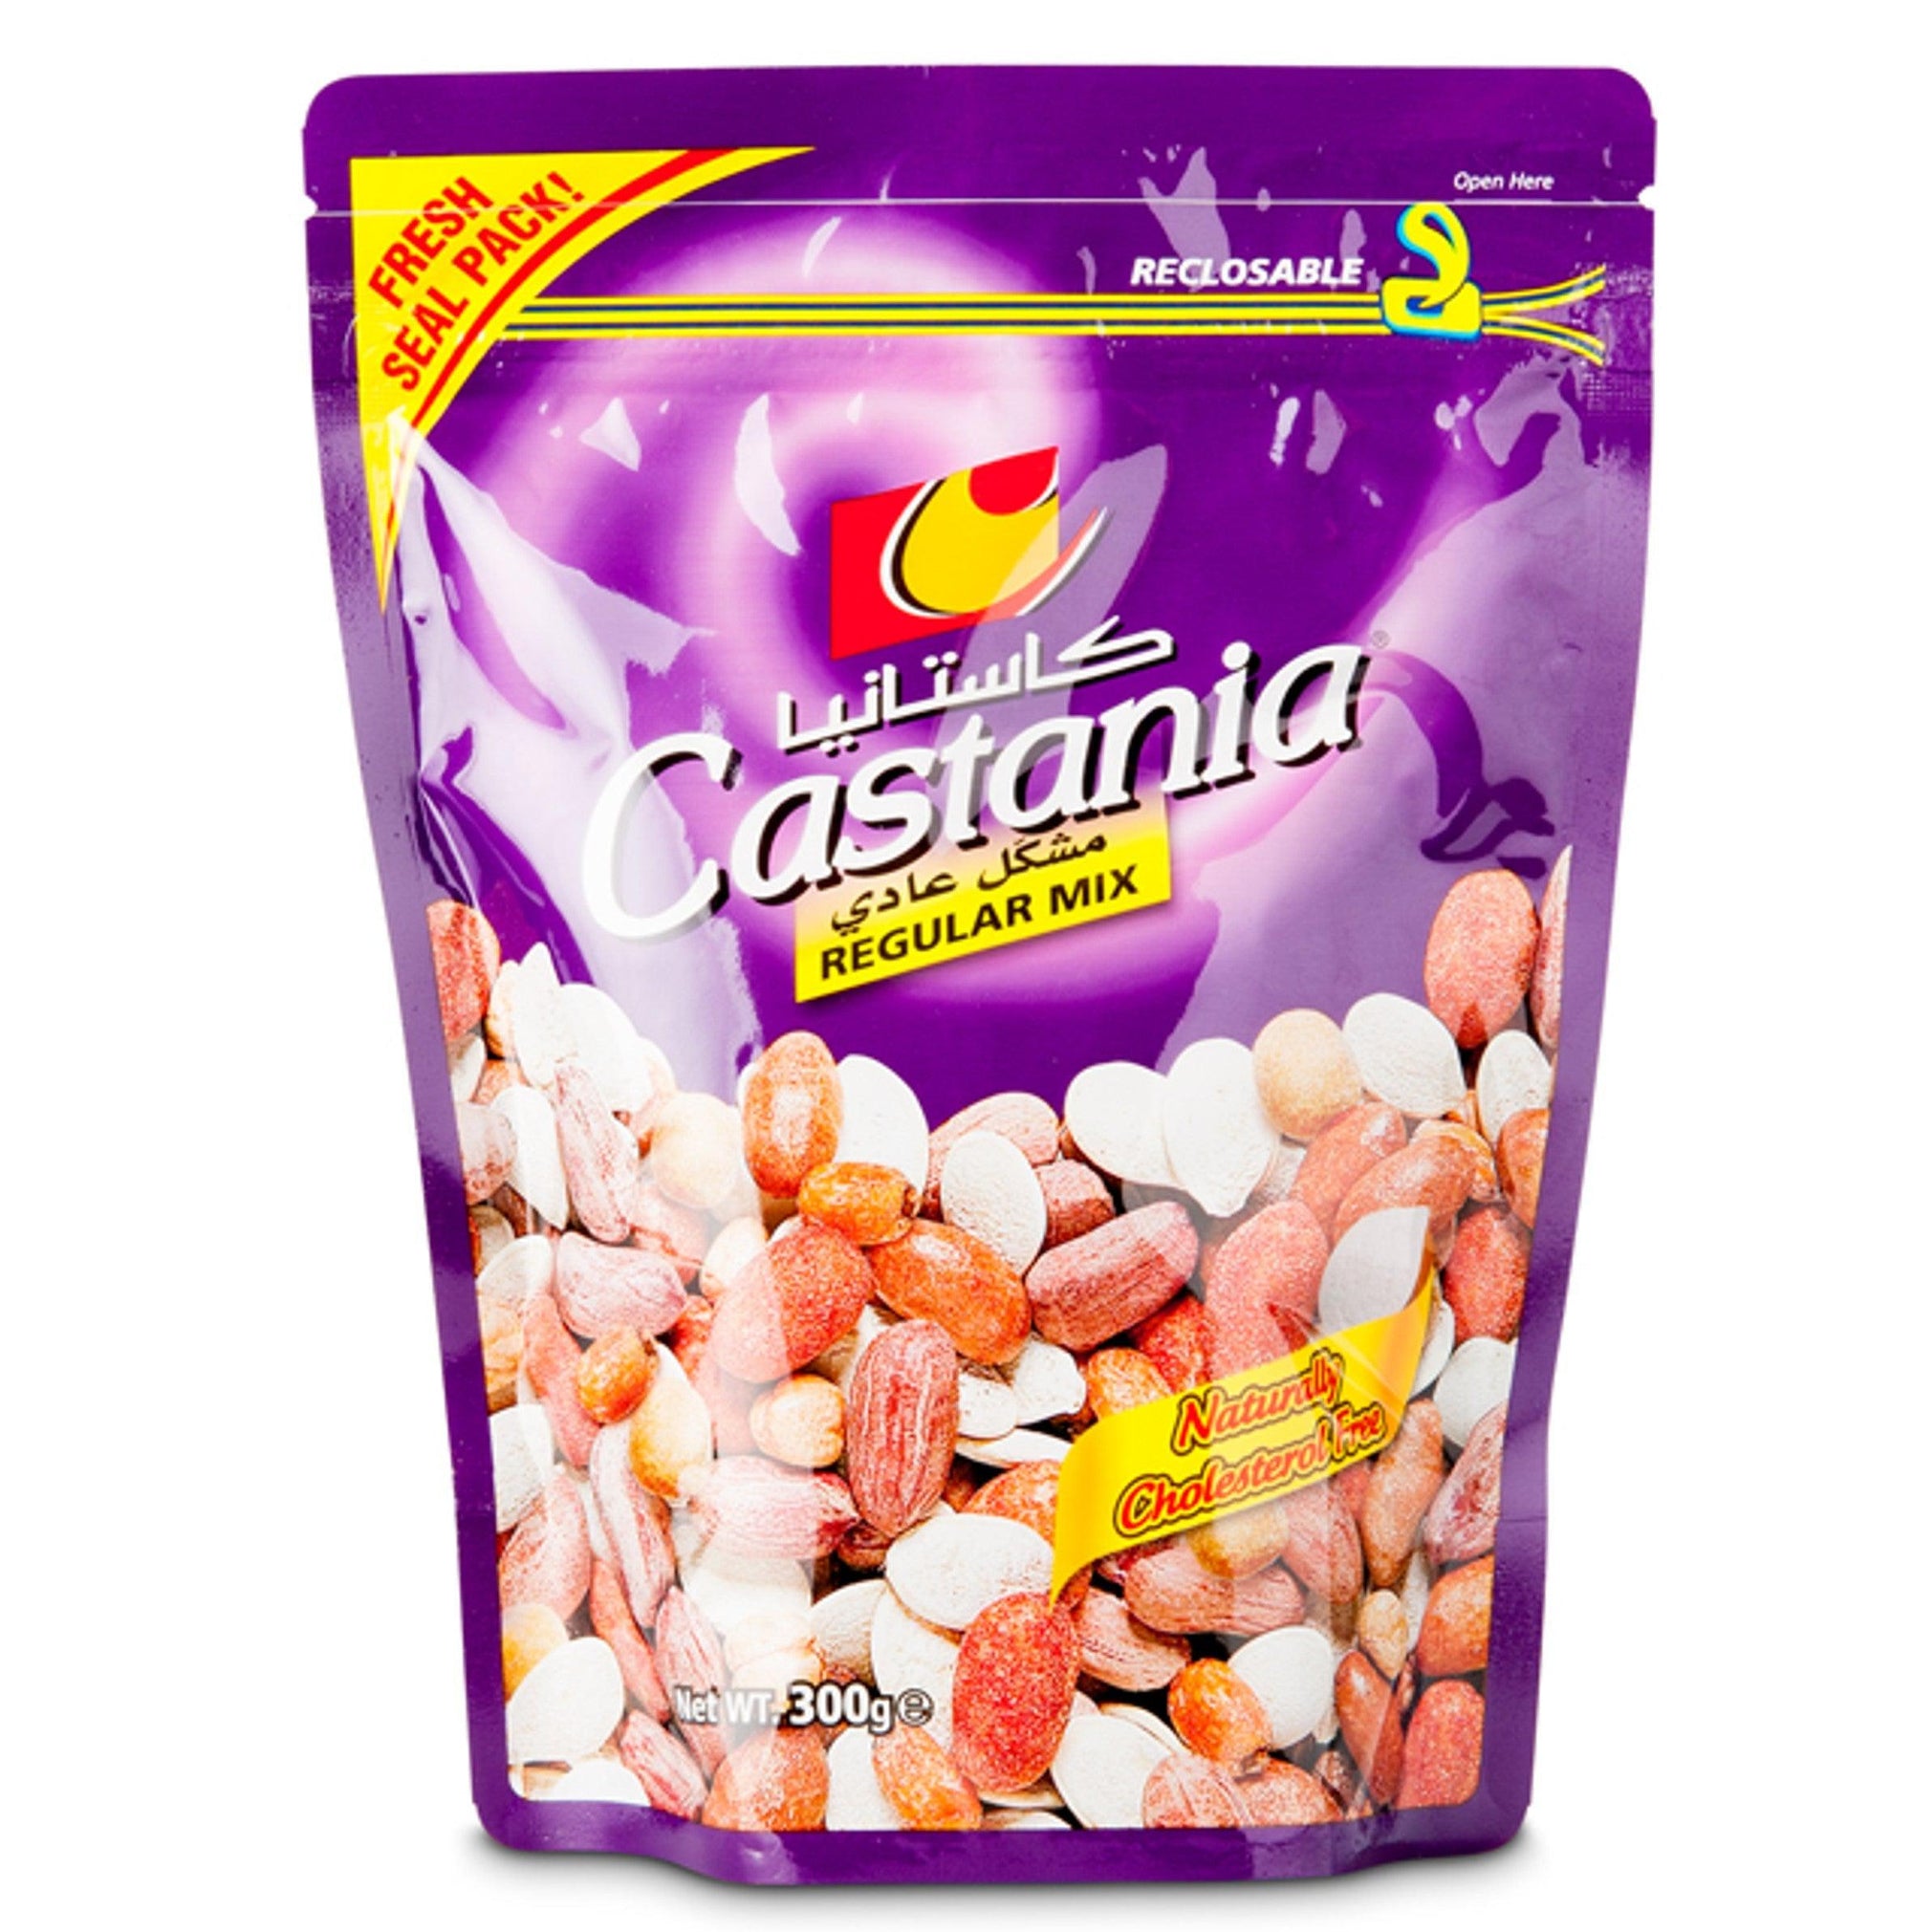 Regular Mixed Nuts, Castania, 300 gr